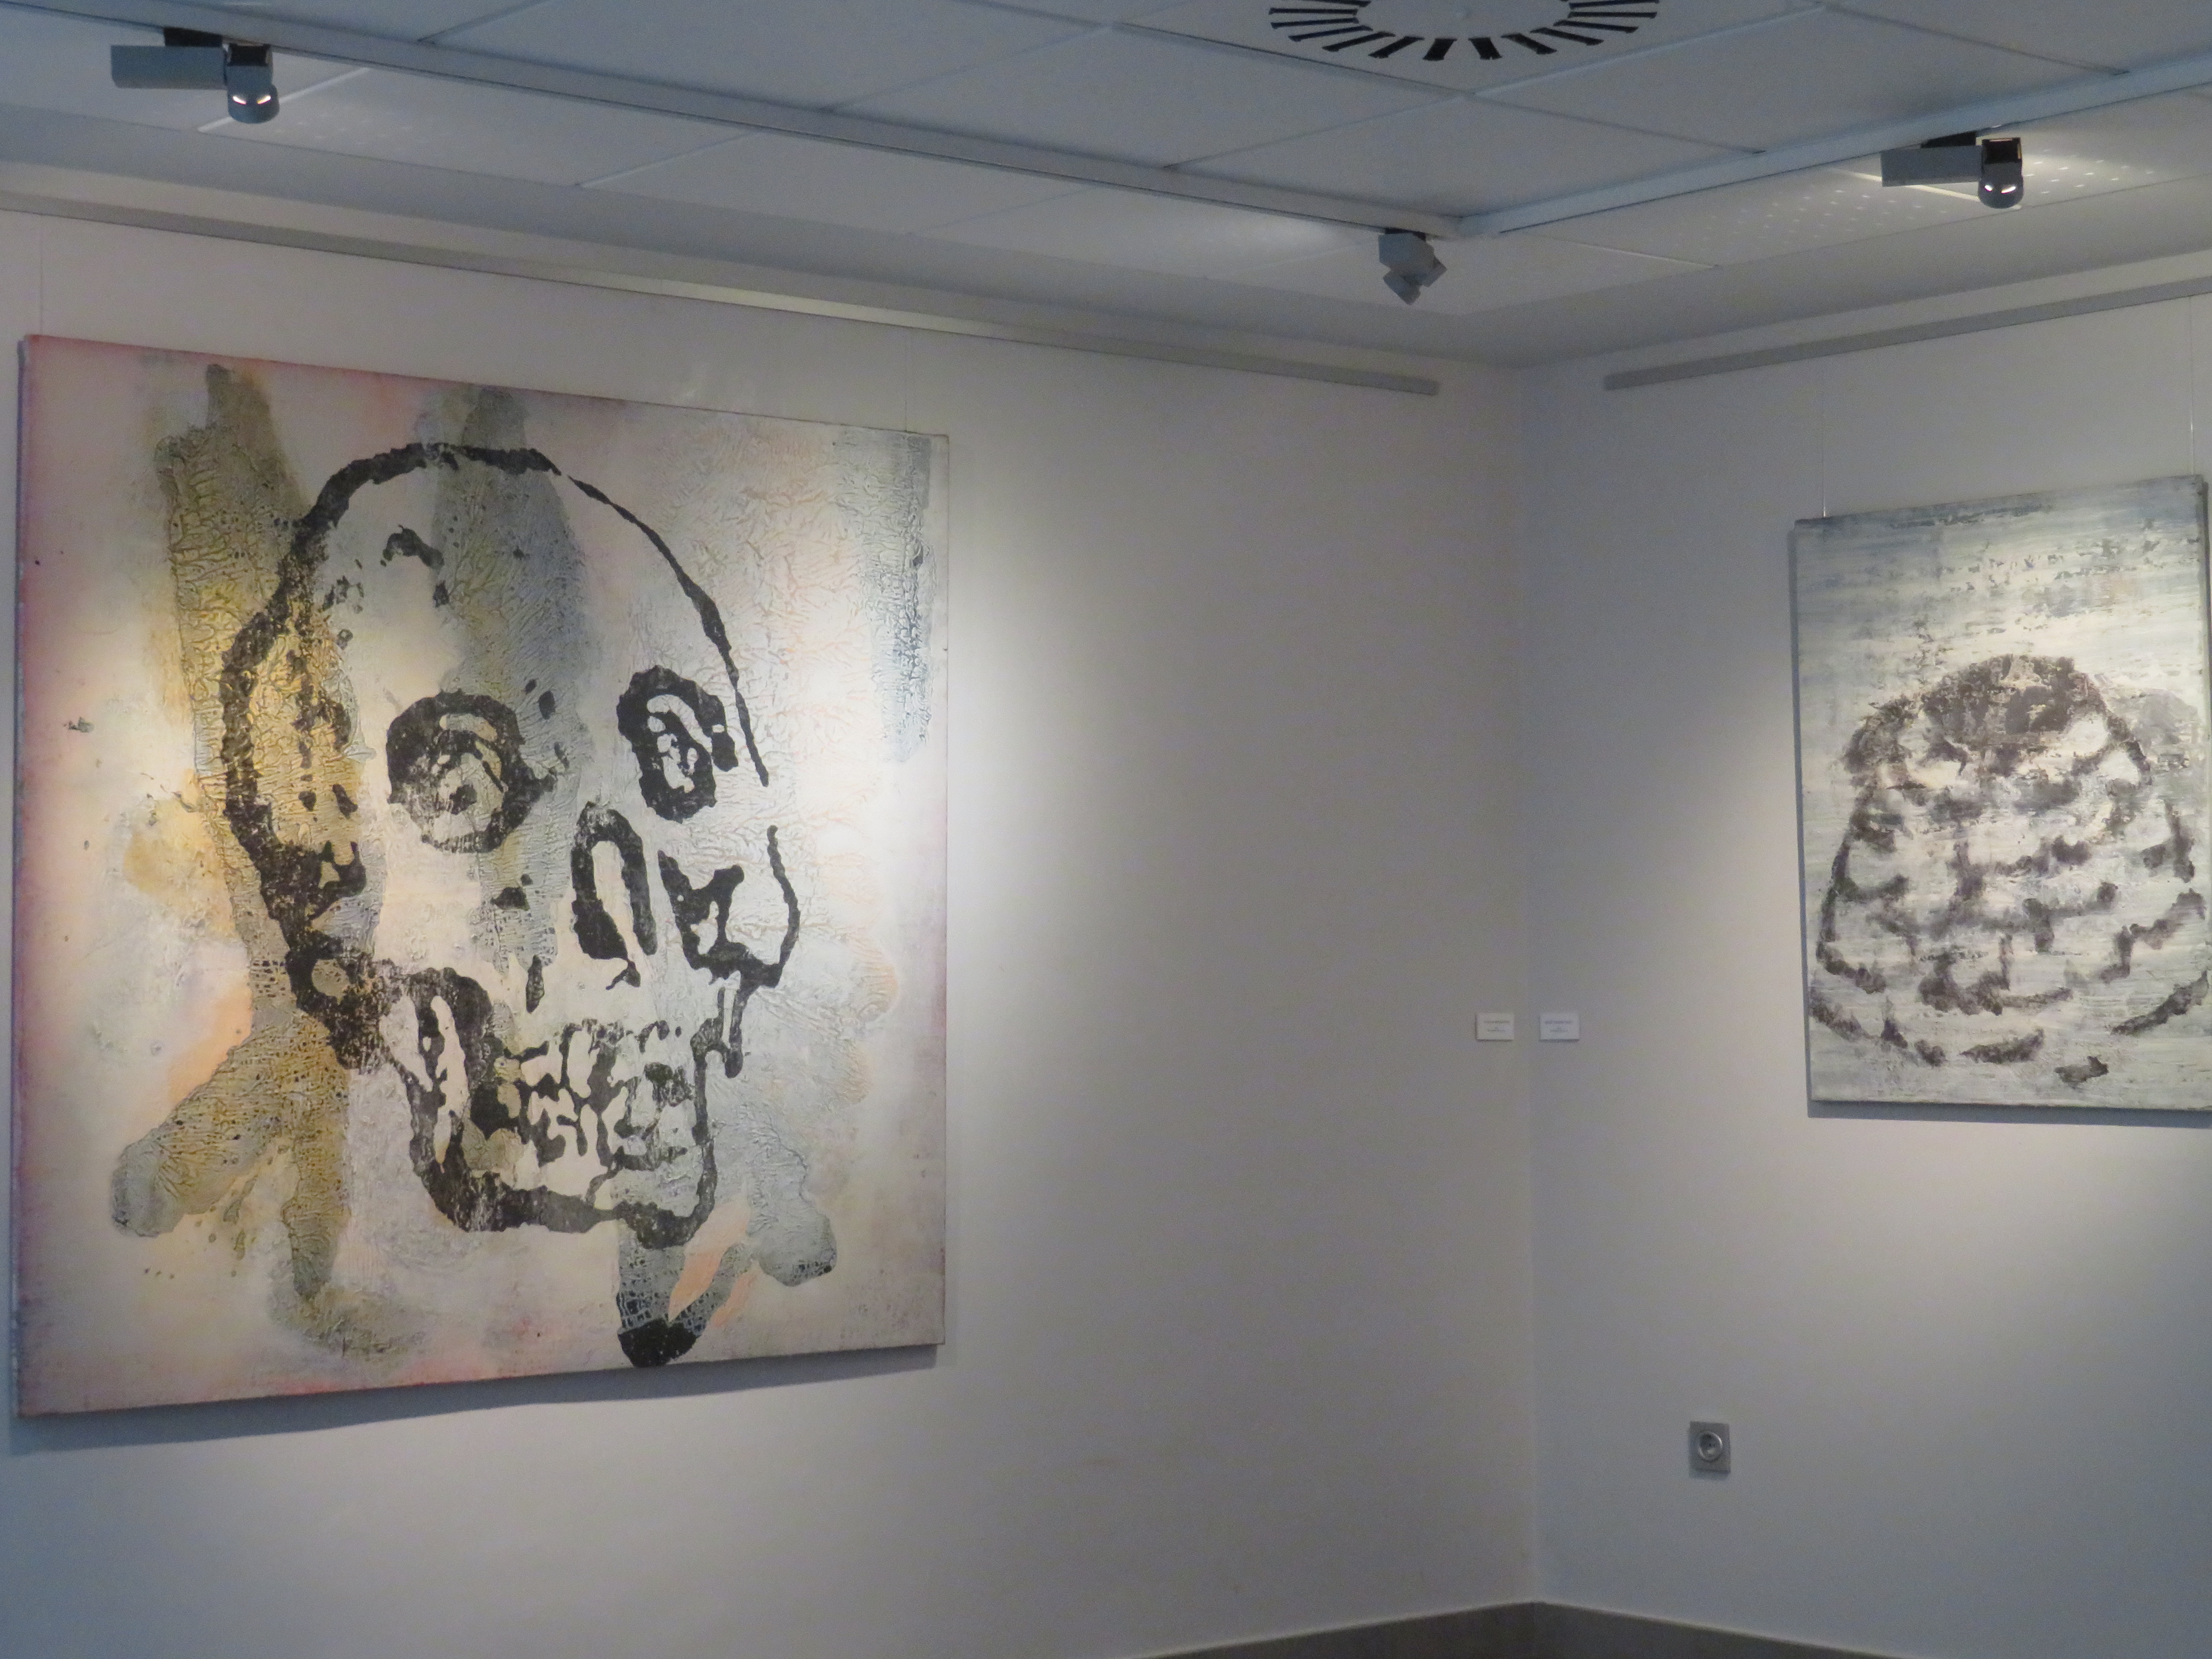 Exposición “Un pintar indómito”, del vallisoletano Javier García Prieto, en el MUVa